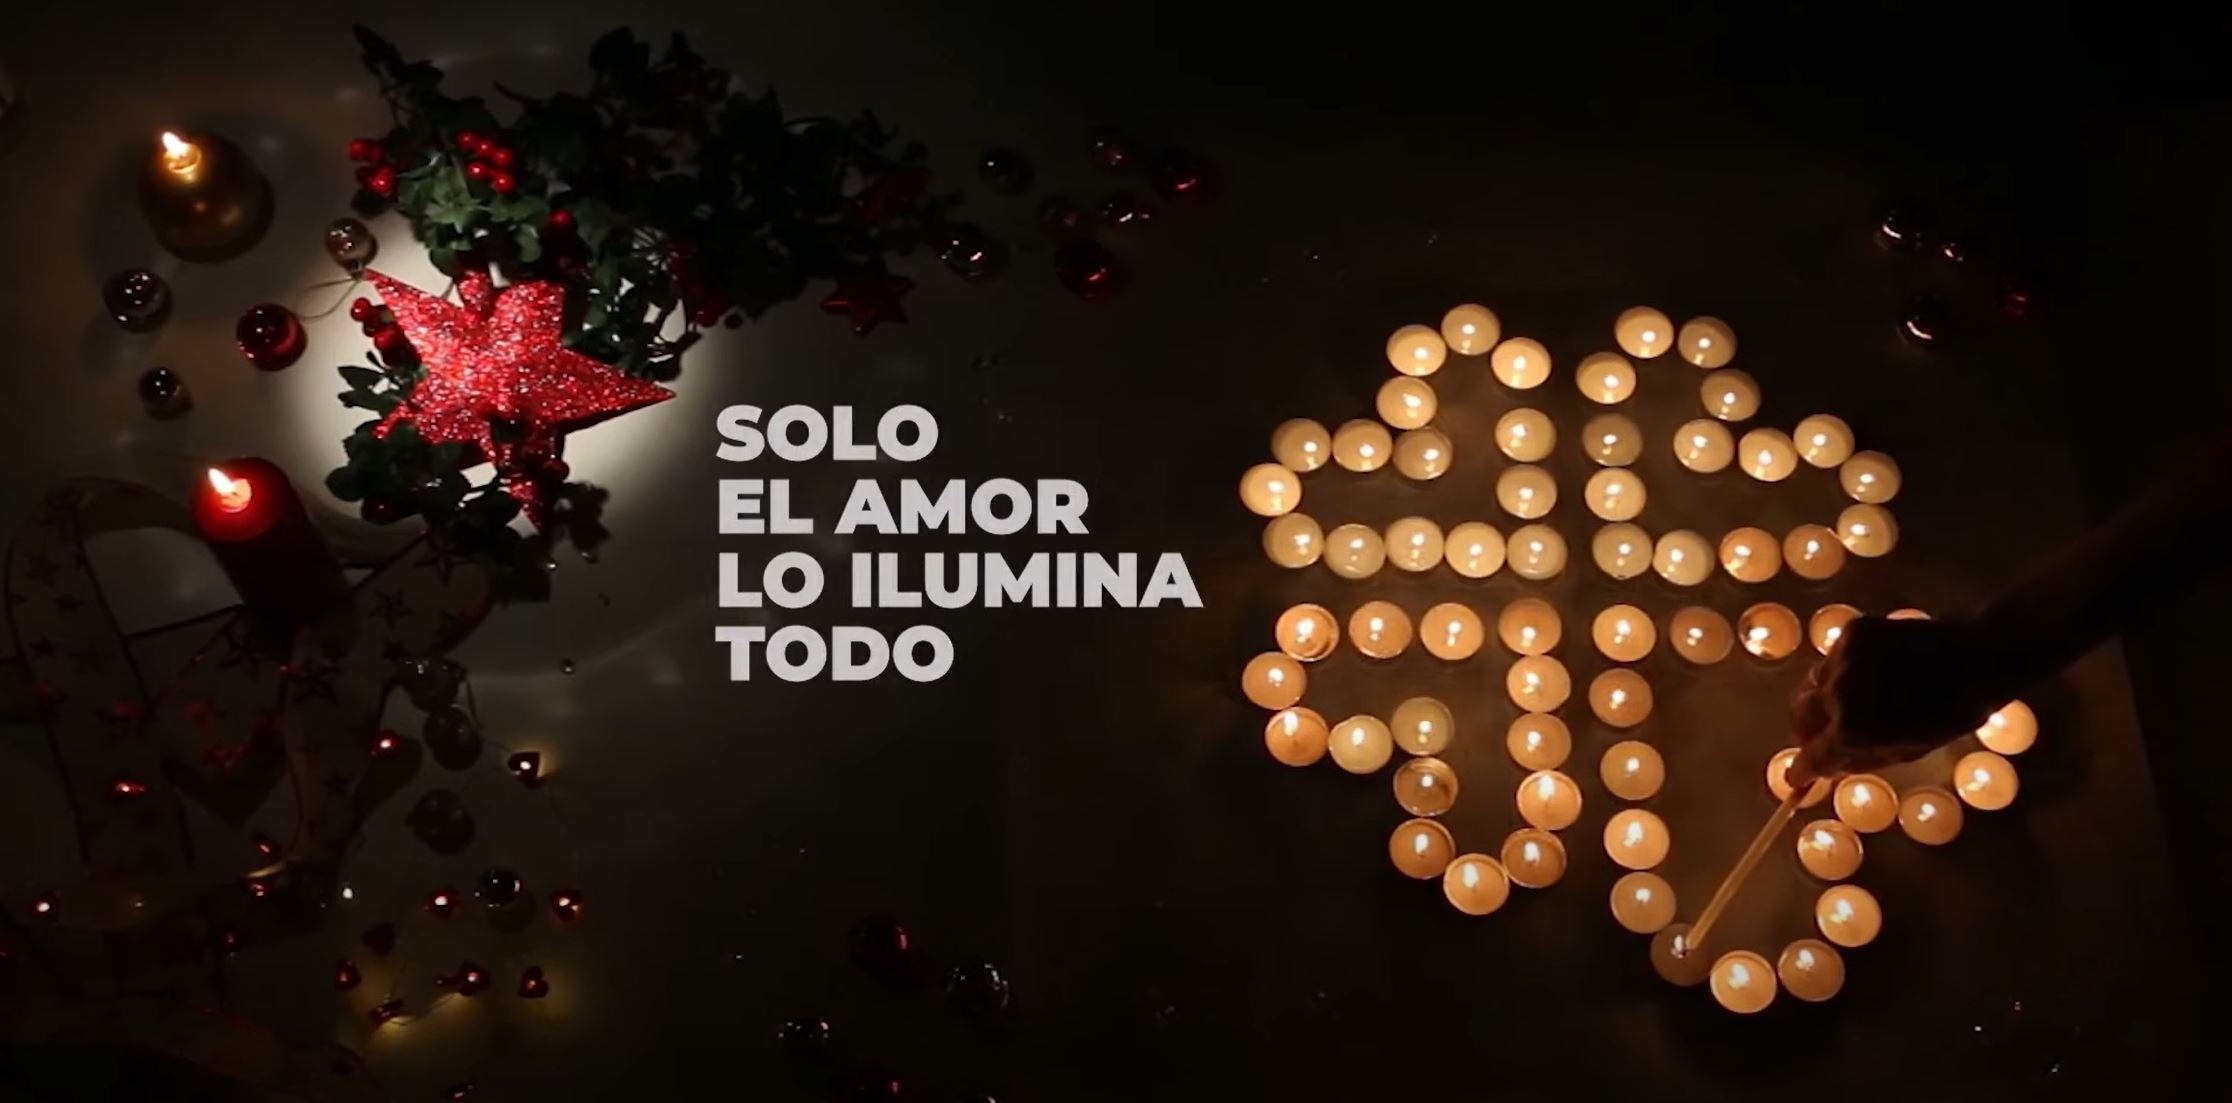 Mutua Universal adhírese á campaña "Soa o amor o ilumina todo" das cáritas Española